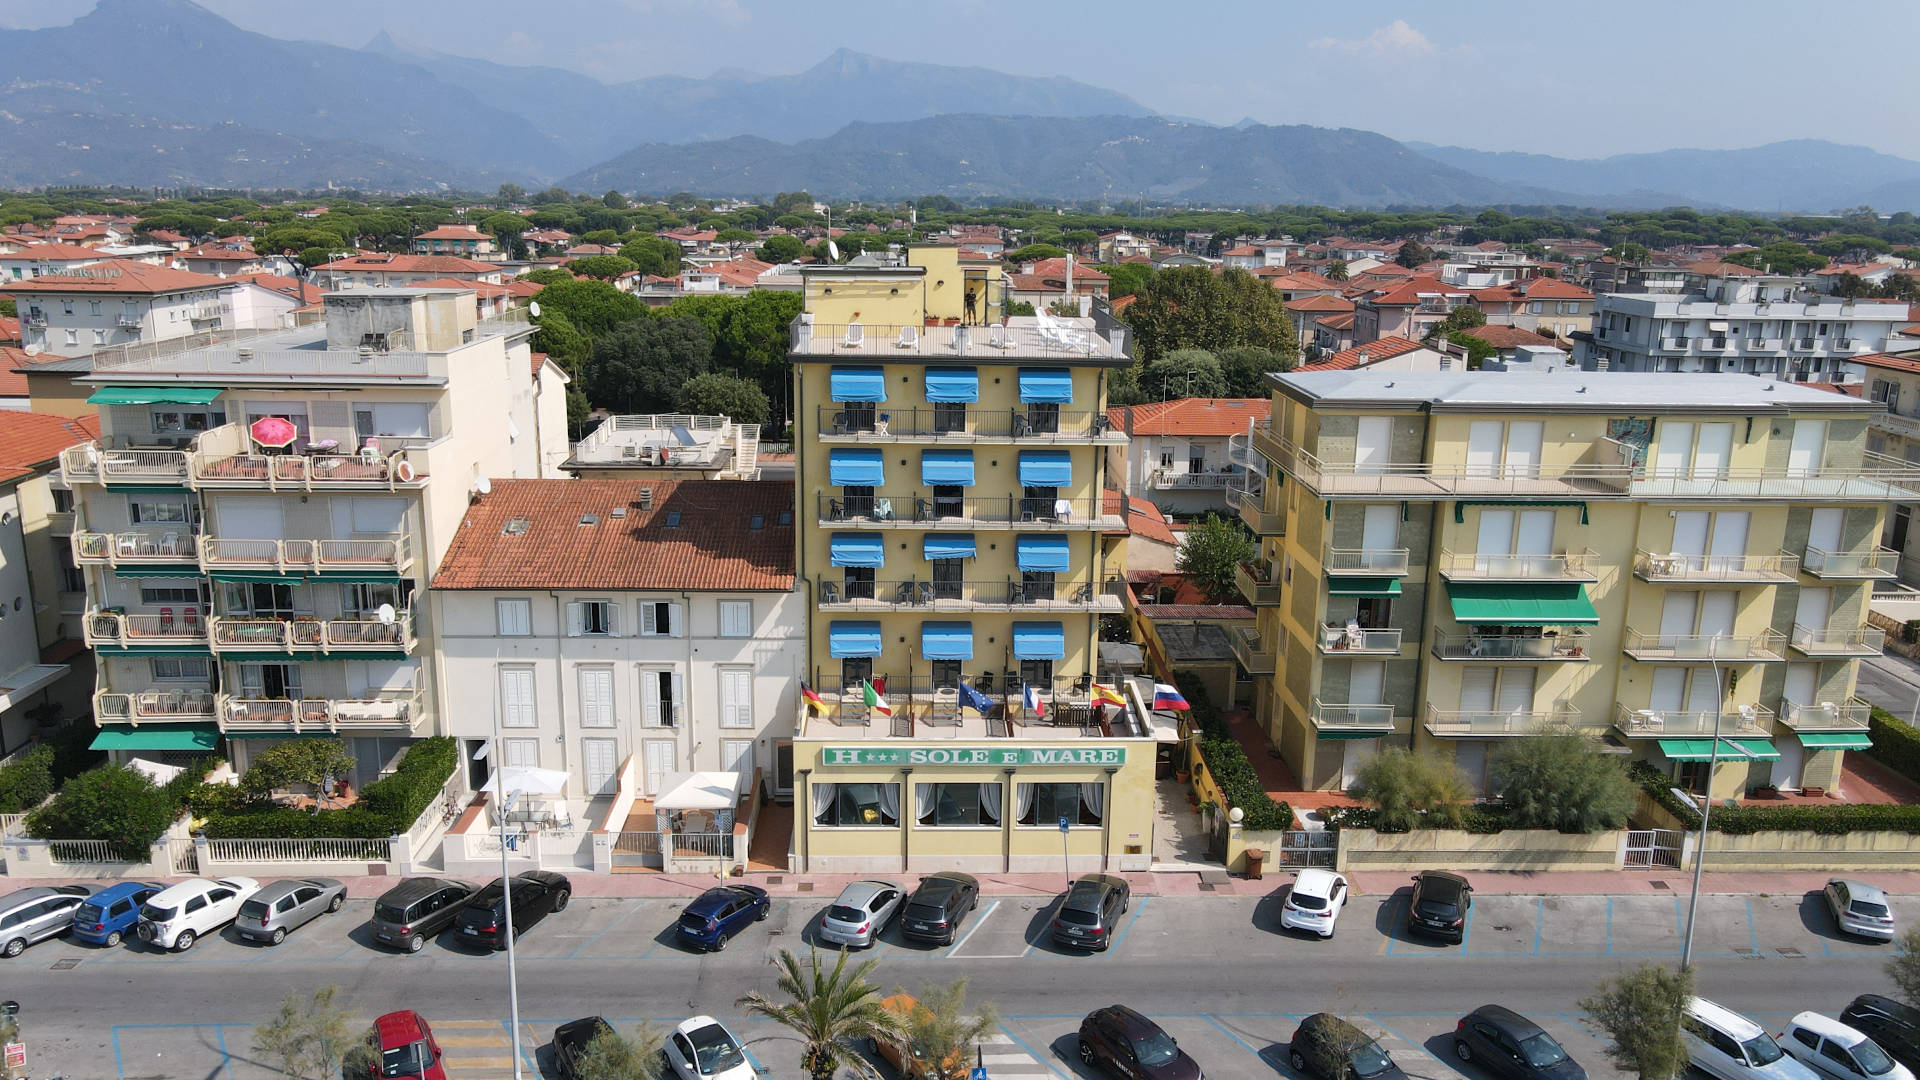 Hotel Sole e Mare - Hotel 3 Stelle frontemare a Lido di Camaiore